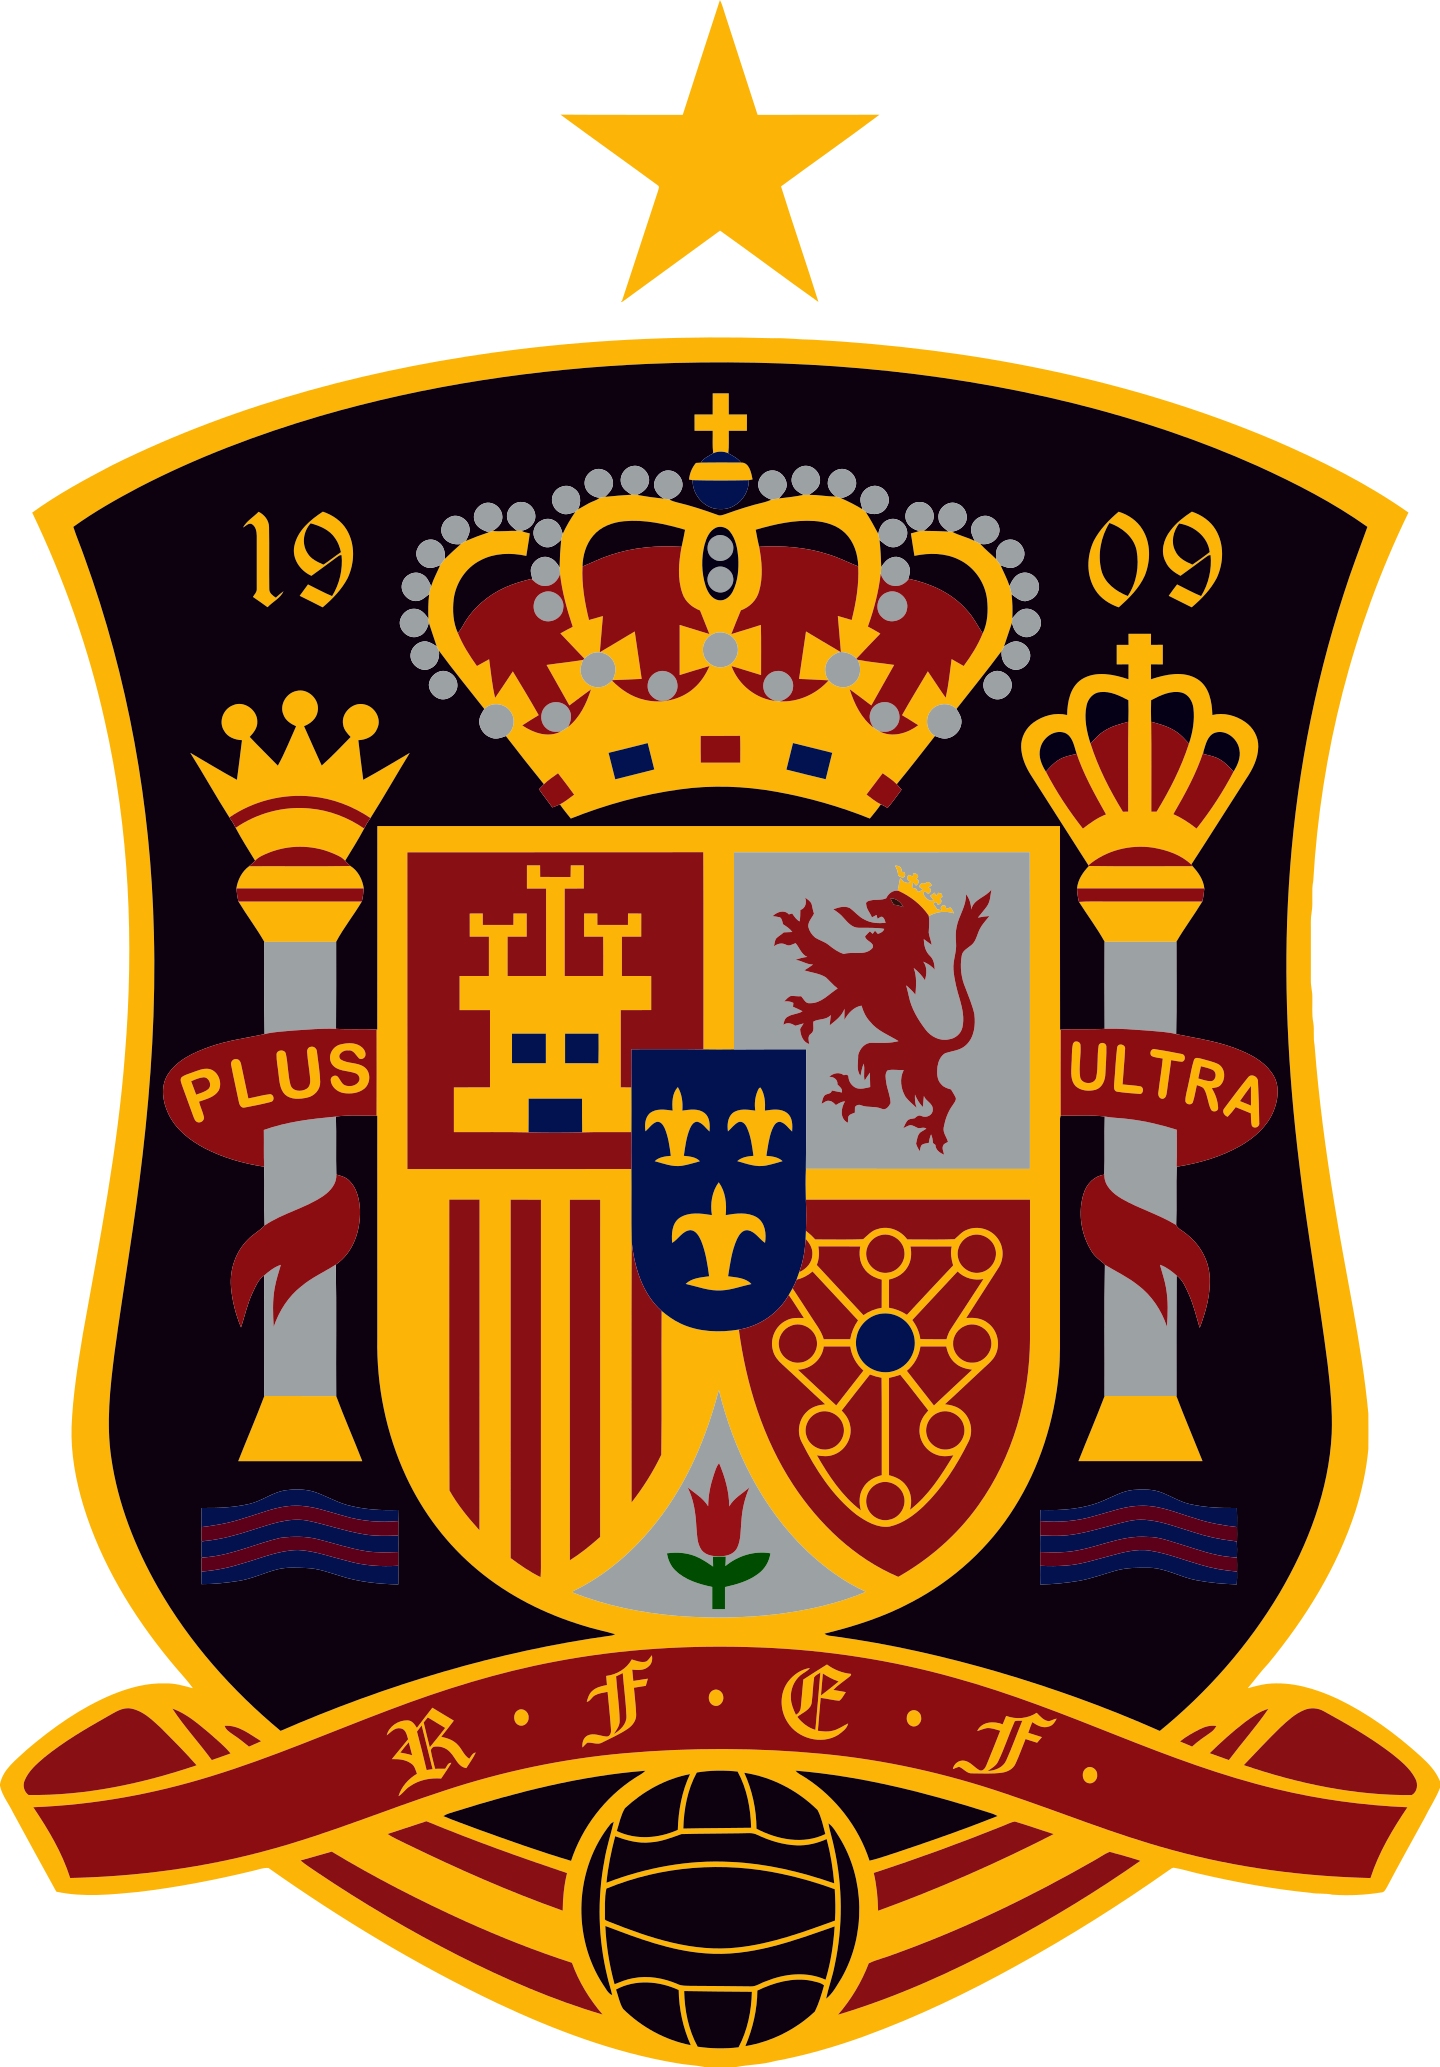 spain national football team logo 3 - Spain National Football Team Logo